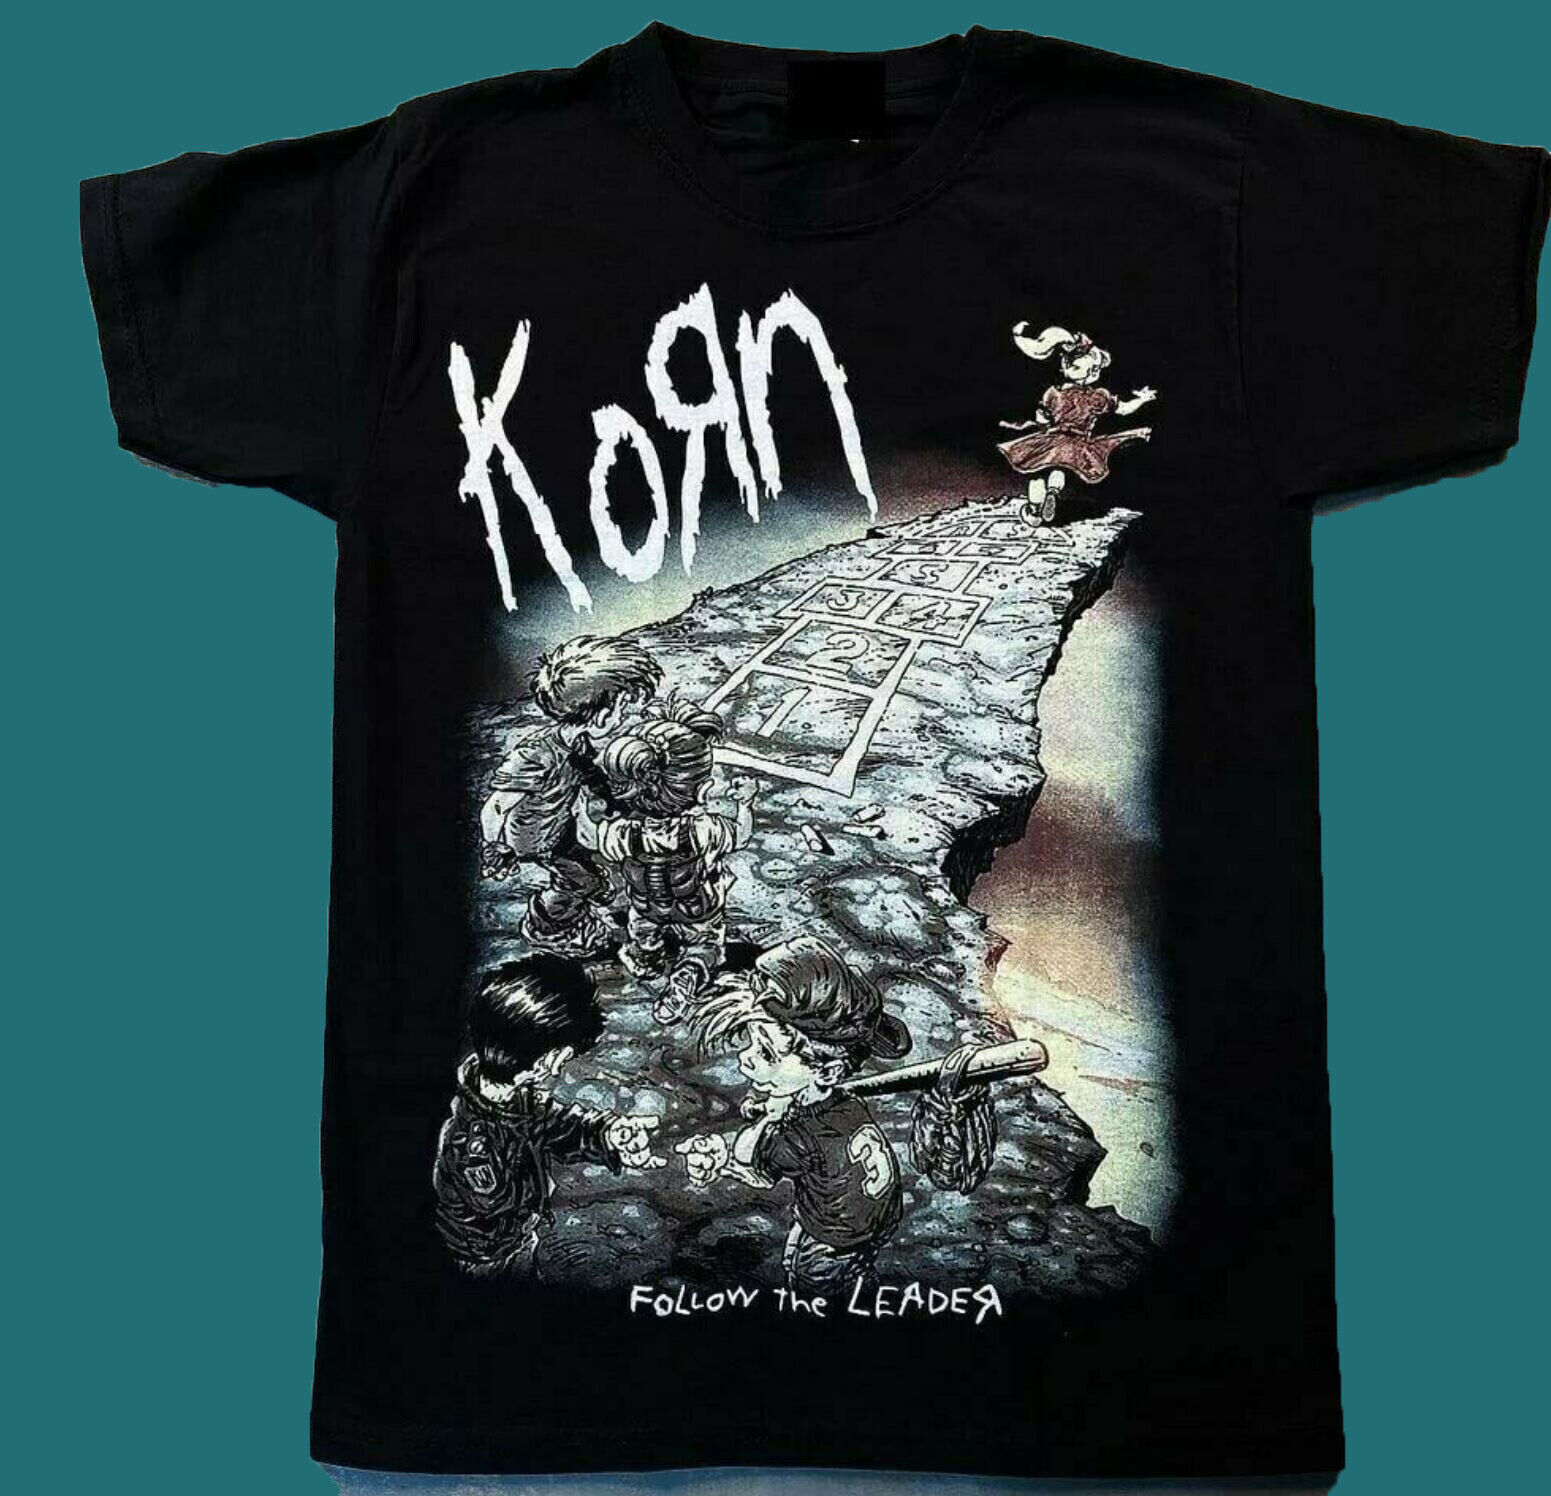 Hot Design Vintage Metal Band #KORN T-shirt 1990s short sleeve black S-5XL N29